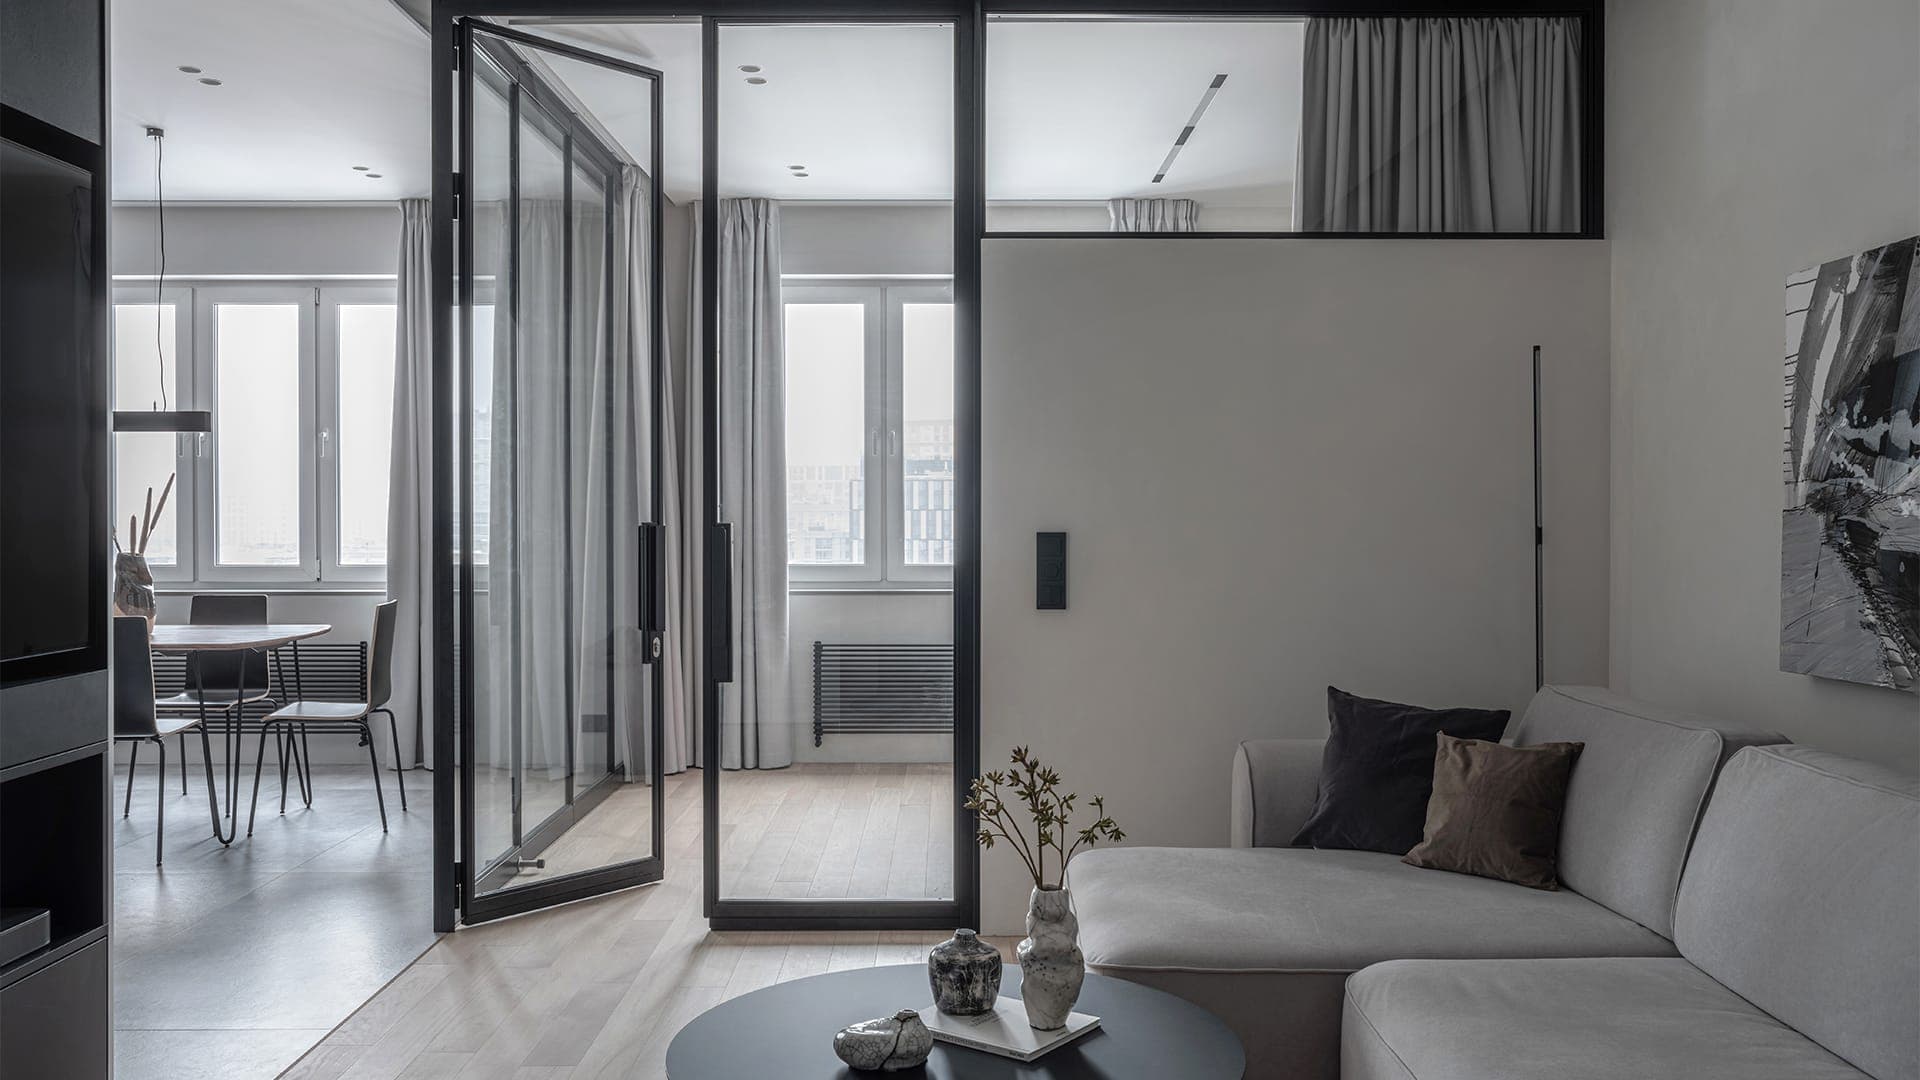 Строгий интерьер квартиры с ванной комнатой в стеклянном кубе — проект Светланы Мамаенко